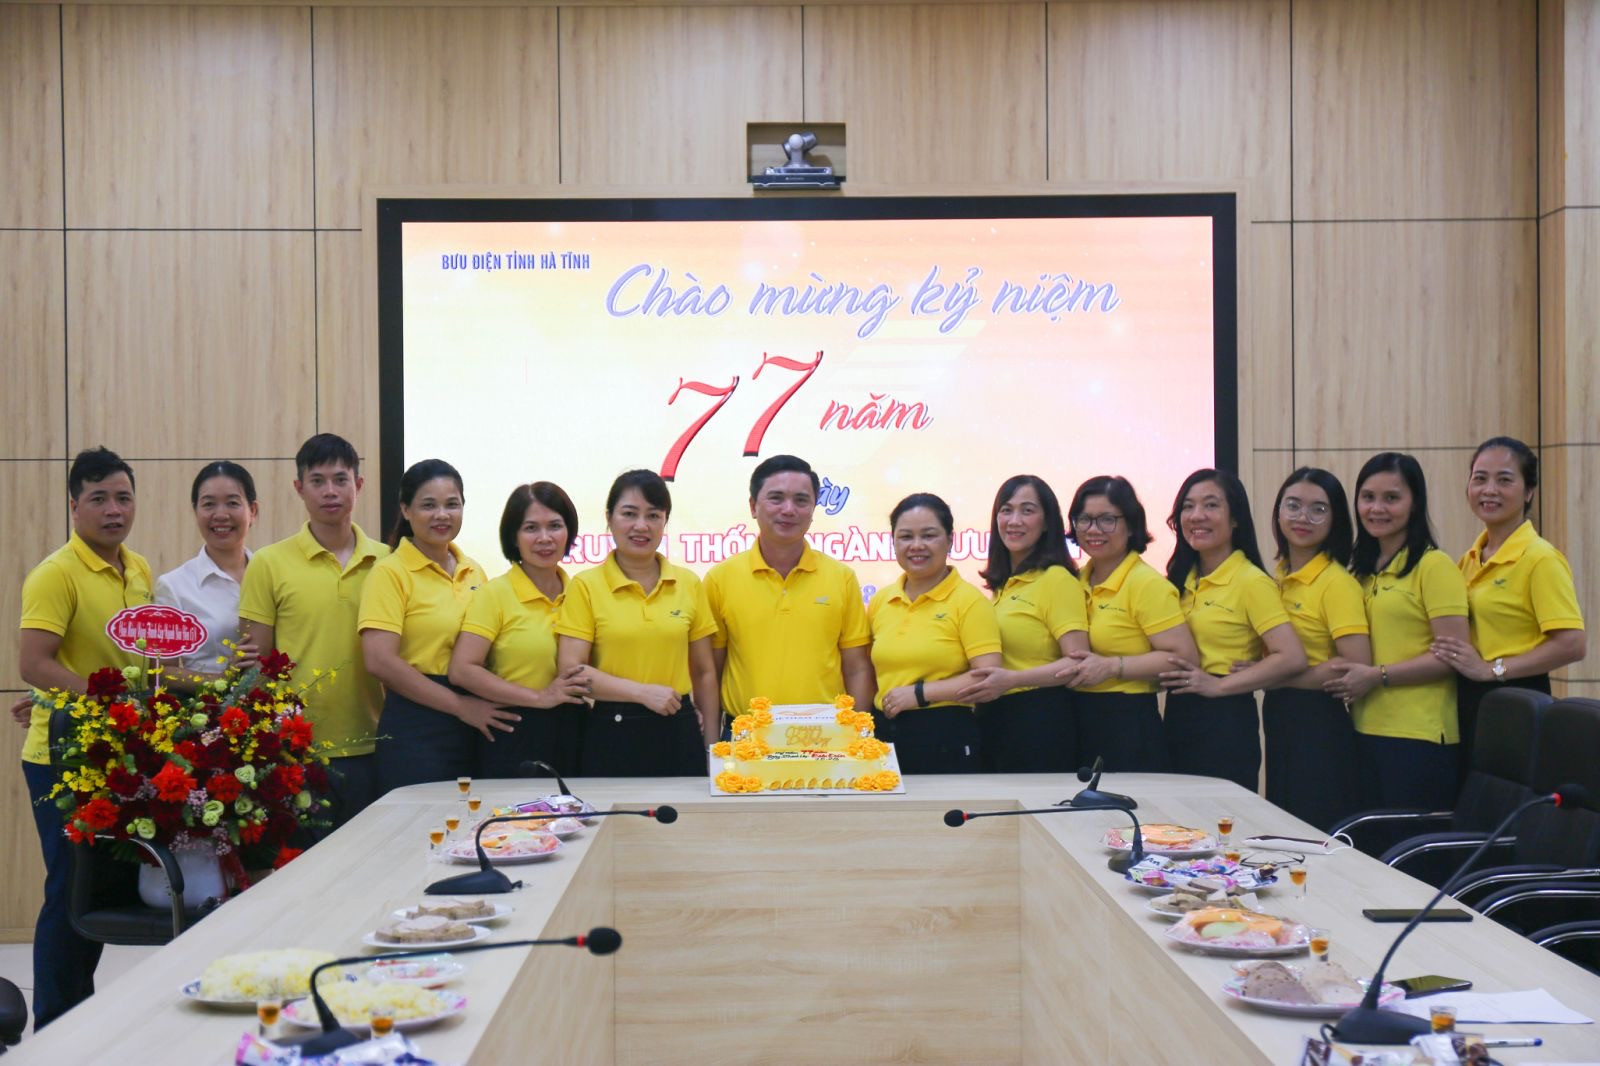 Ông Nguyễn Long Giang, Giám đốc Bưu điện tỉnh Hà Tĩnh cảm ơn sự đóng góp, cống hiến của tất cả cán bộ công nhân viên trong thời gian qua.